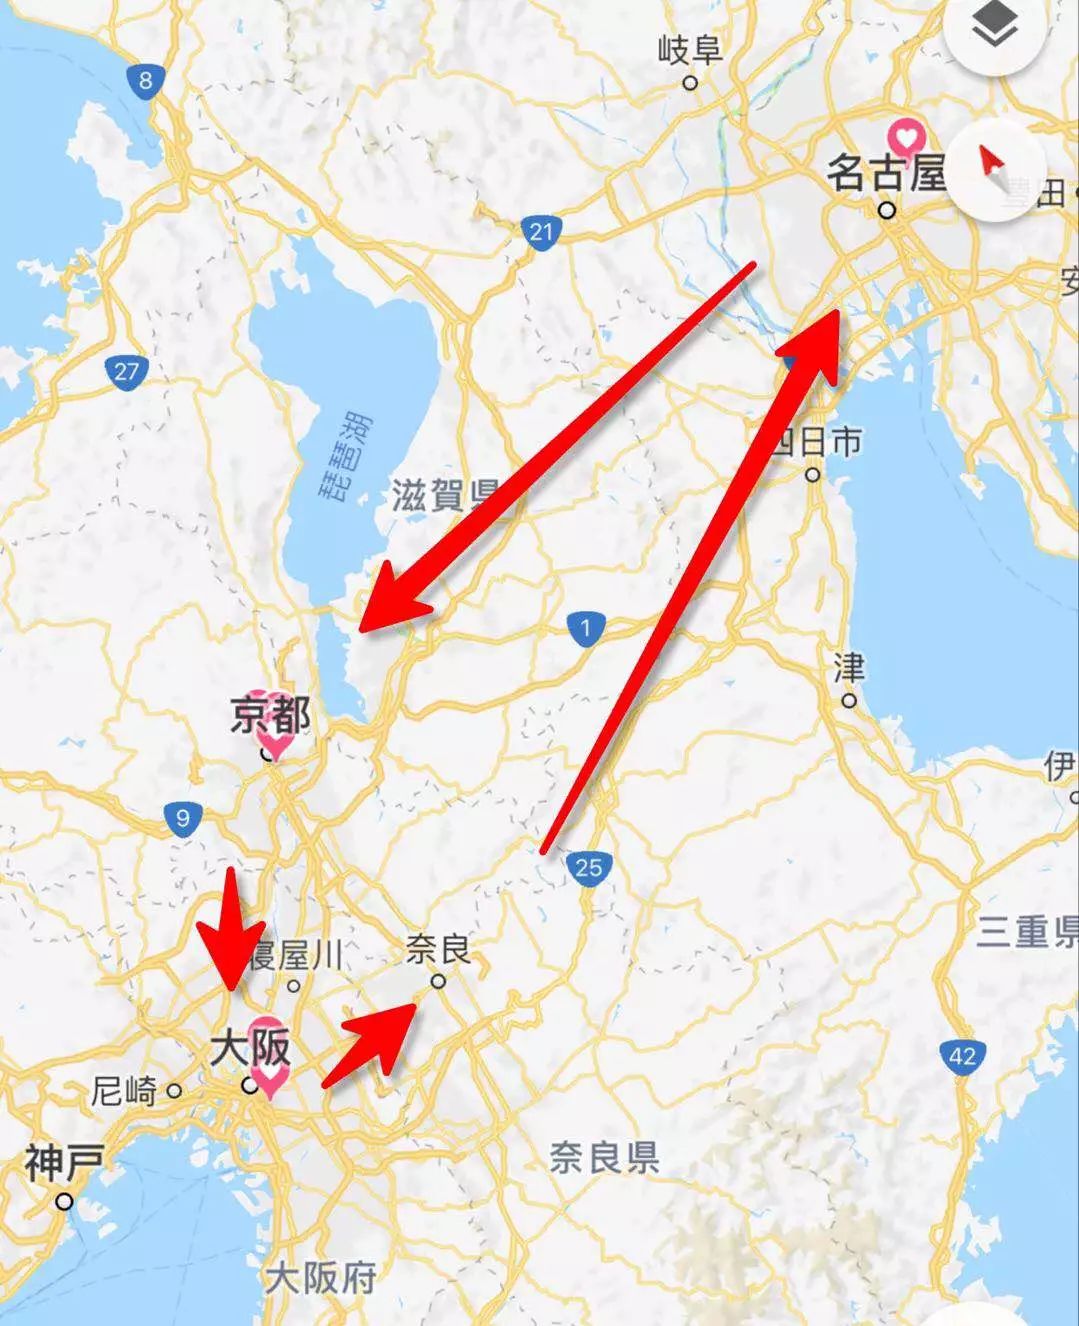 旅游 正文 计划了自驾日本,线路从大阪开始,再到奈良,名古屋和京都,多